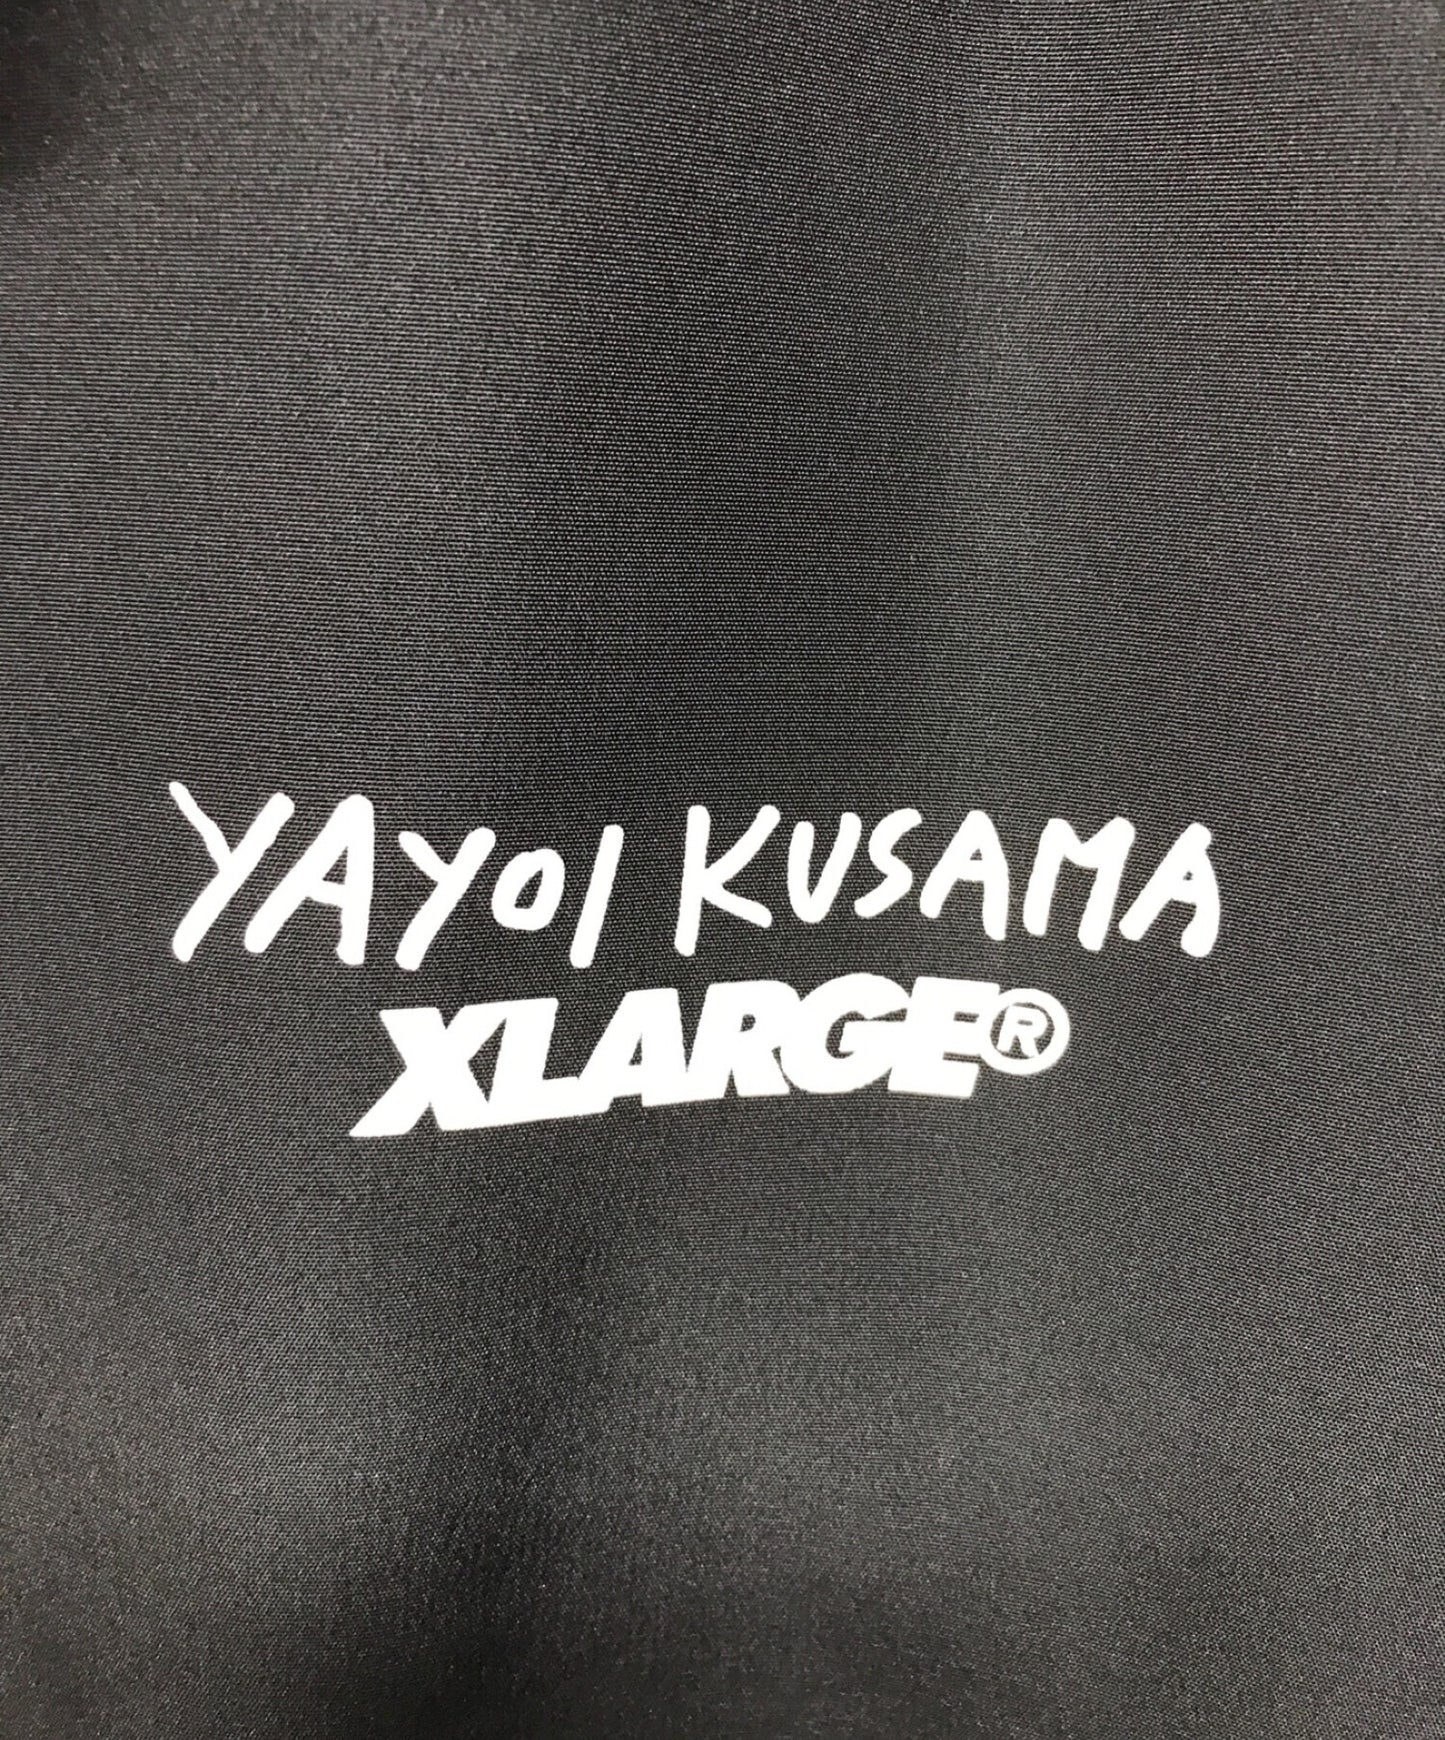 X-LARGE X X-GIRL 코치 재킷/용감한 재킷